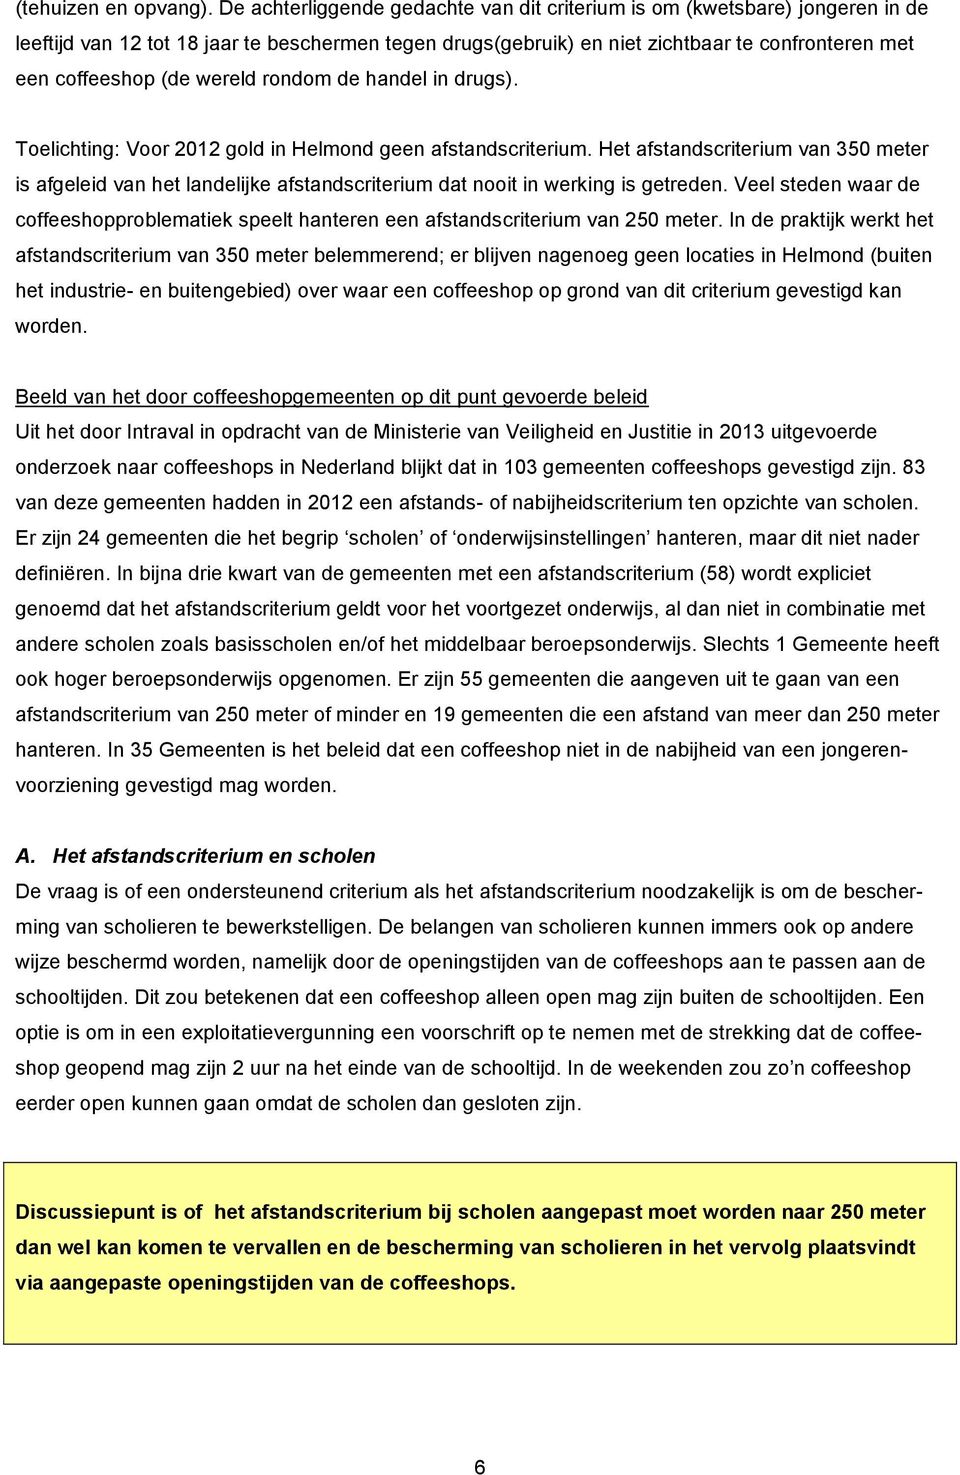 wereld rondom de handel in drugs). Toelichting: Voor 2012 gold in Helmond geen afstandscriterium.